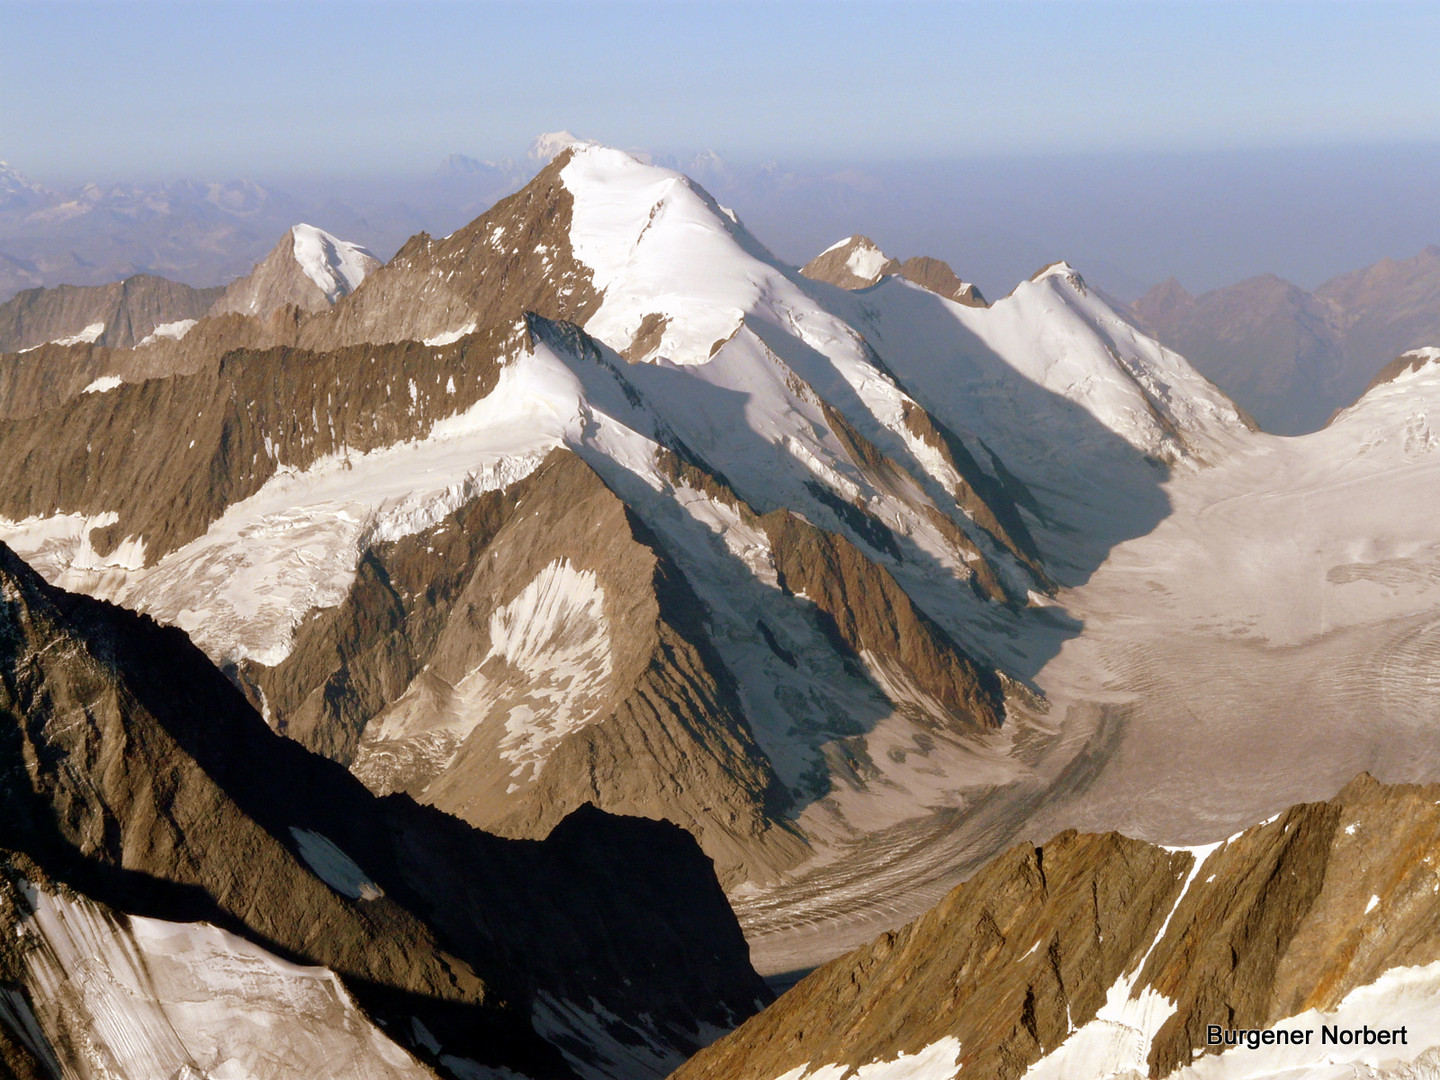 Vorne das Aletschhorn in der Mitte. Mont Blanc hinten am Horizont.